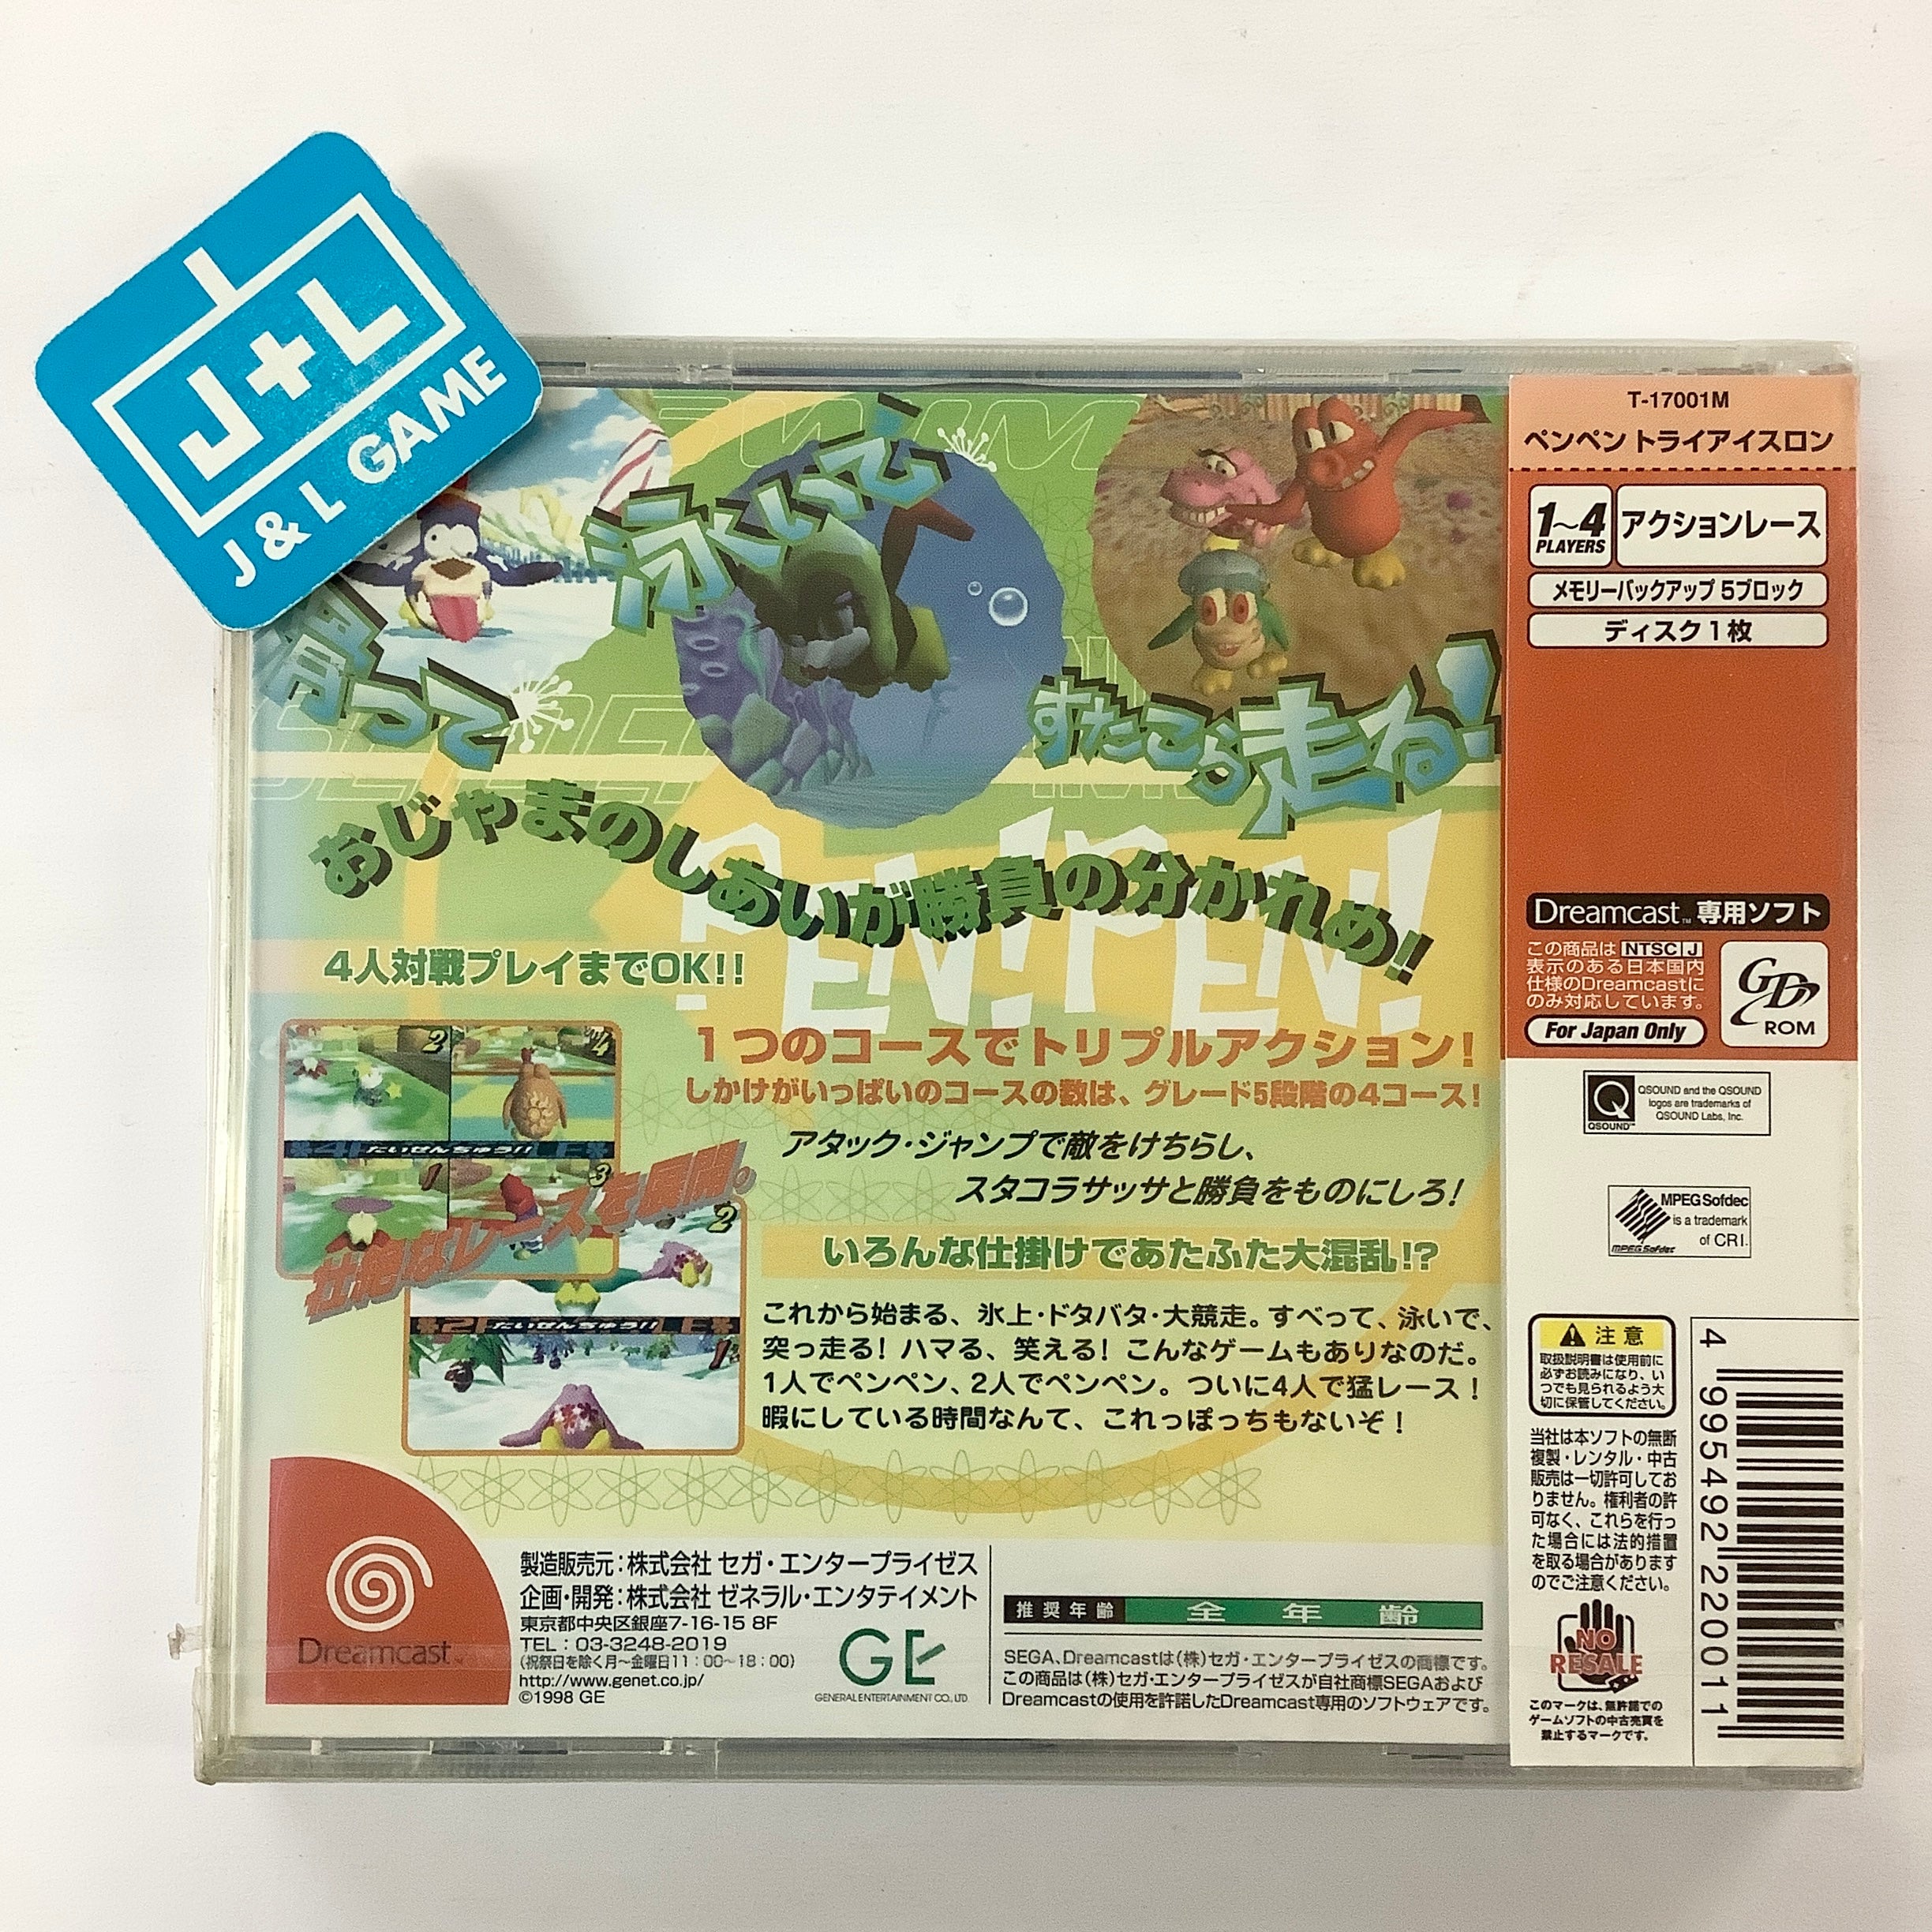 Pen Pen TriIcelon - (DC) SEGA Dreamcast (Japanese Import) Video Games General Entertainment   